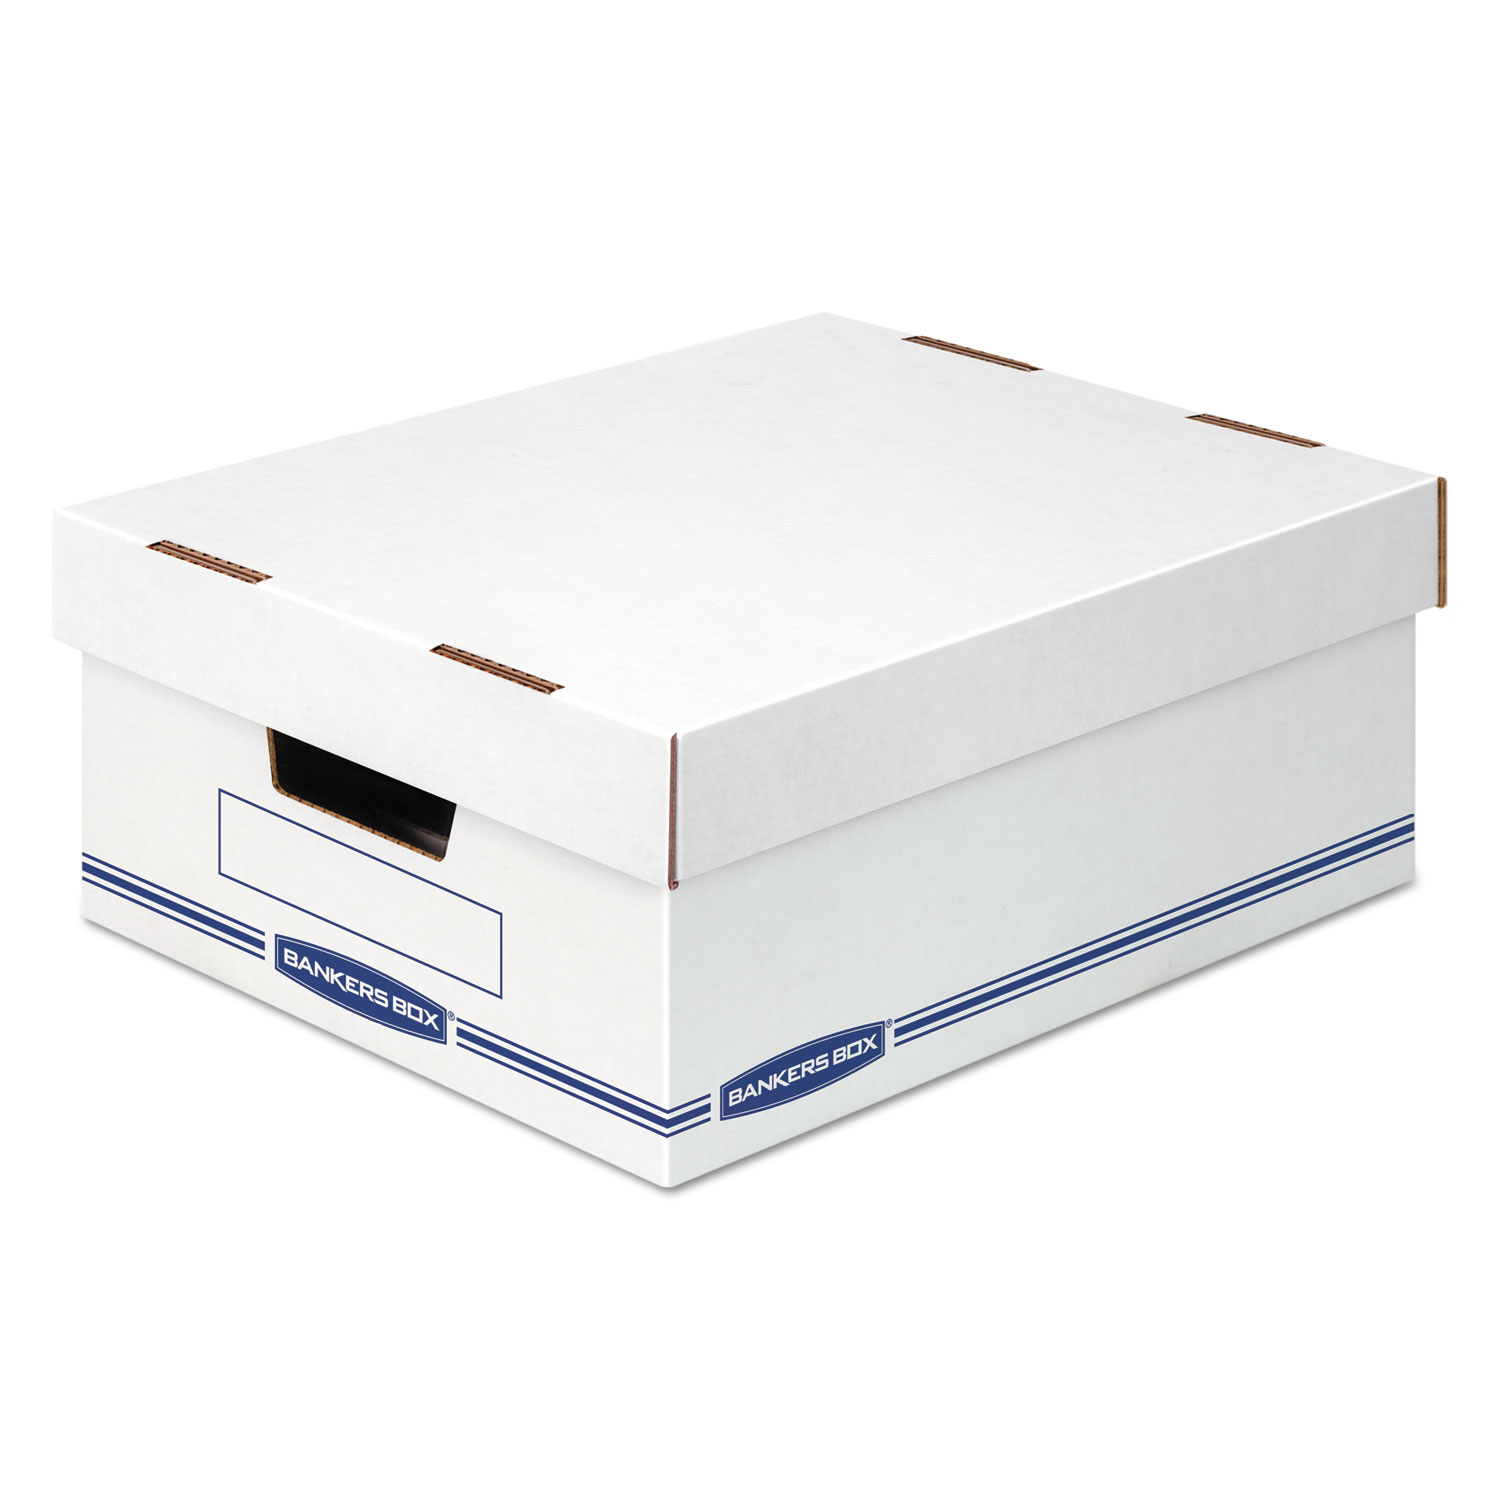  Bankers Box 4662301 Organizer Storage Boxes, Large, 12.75 x 16.5 x 6.5, White/Blue, 12/Carton (FEL4662301) 